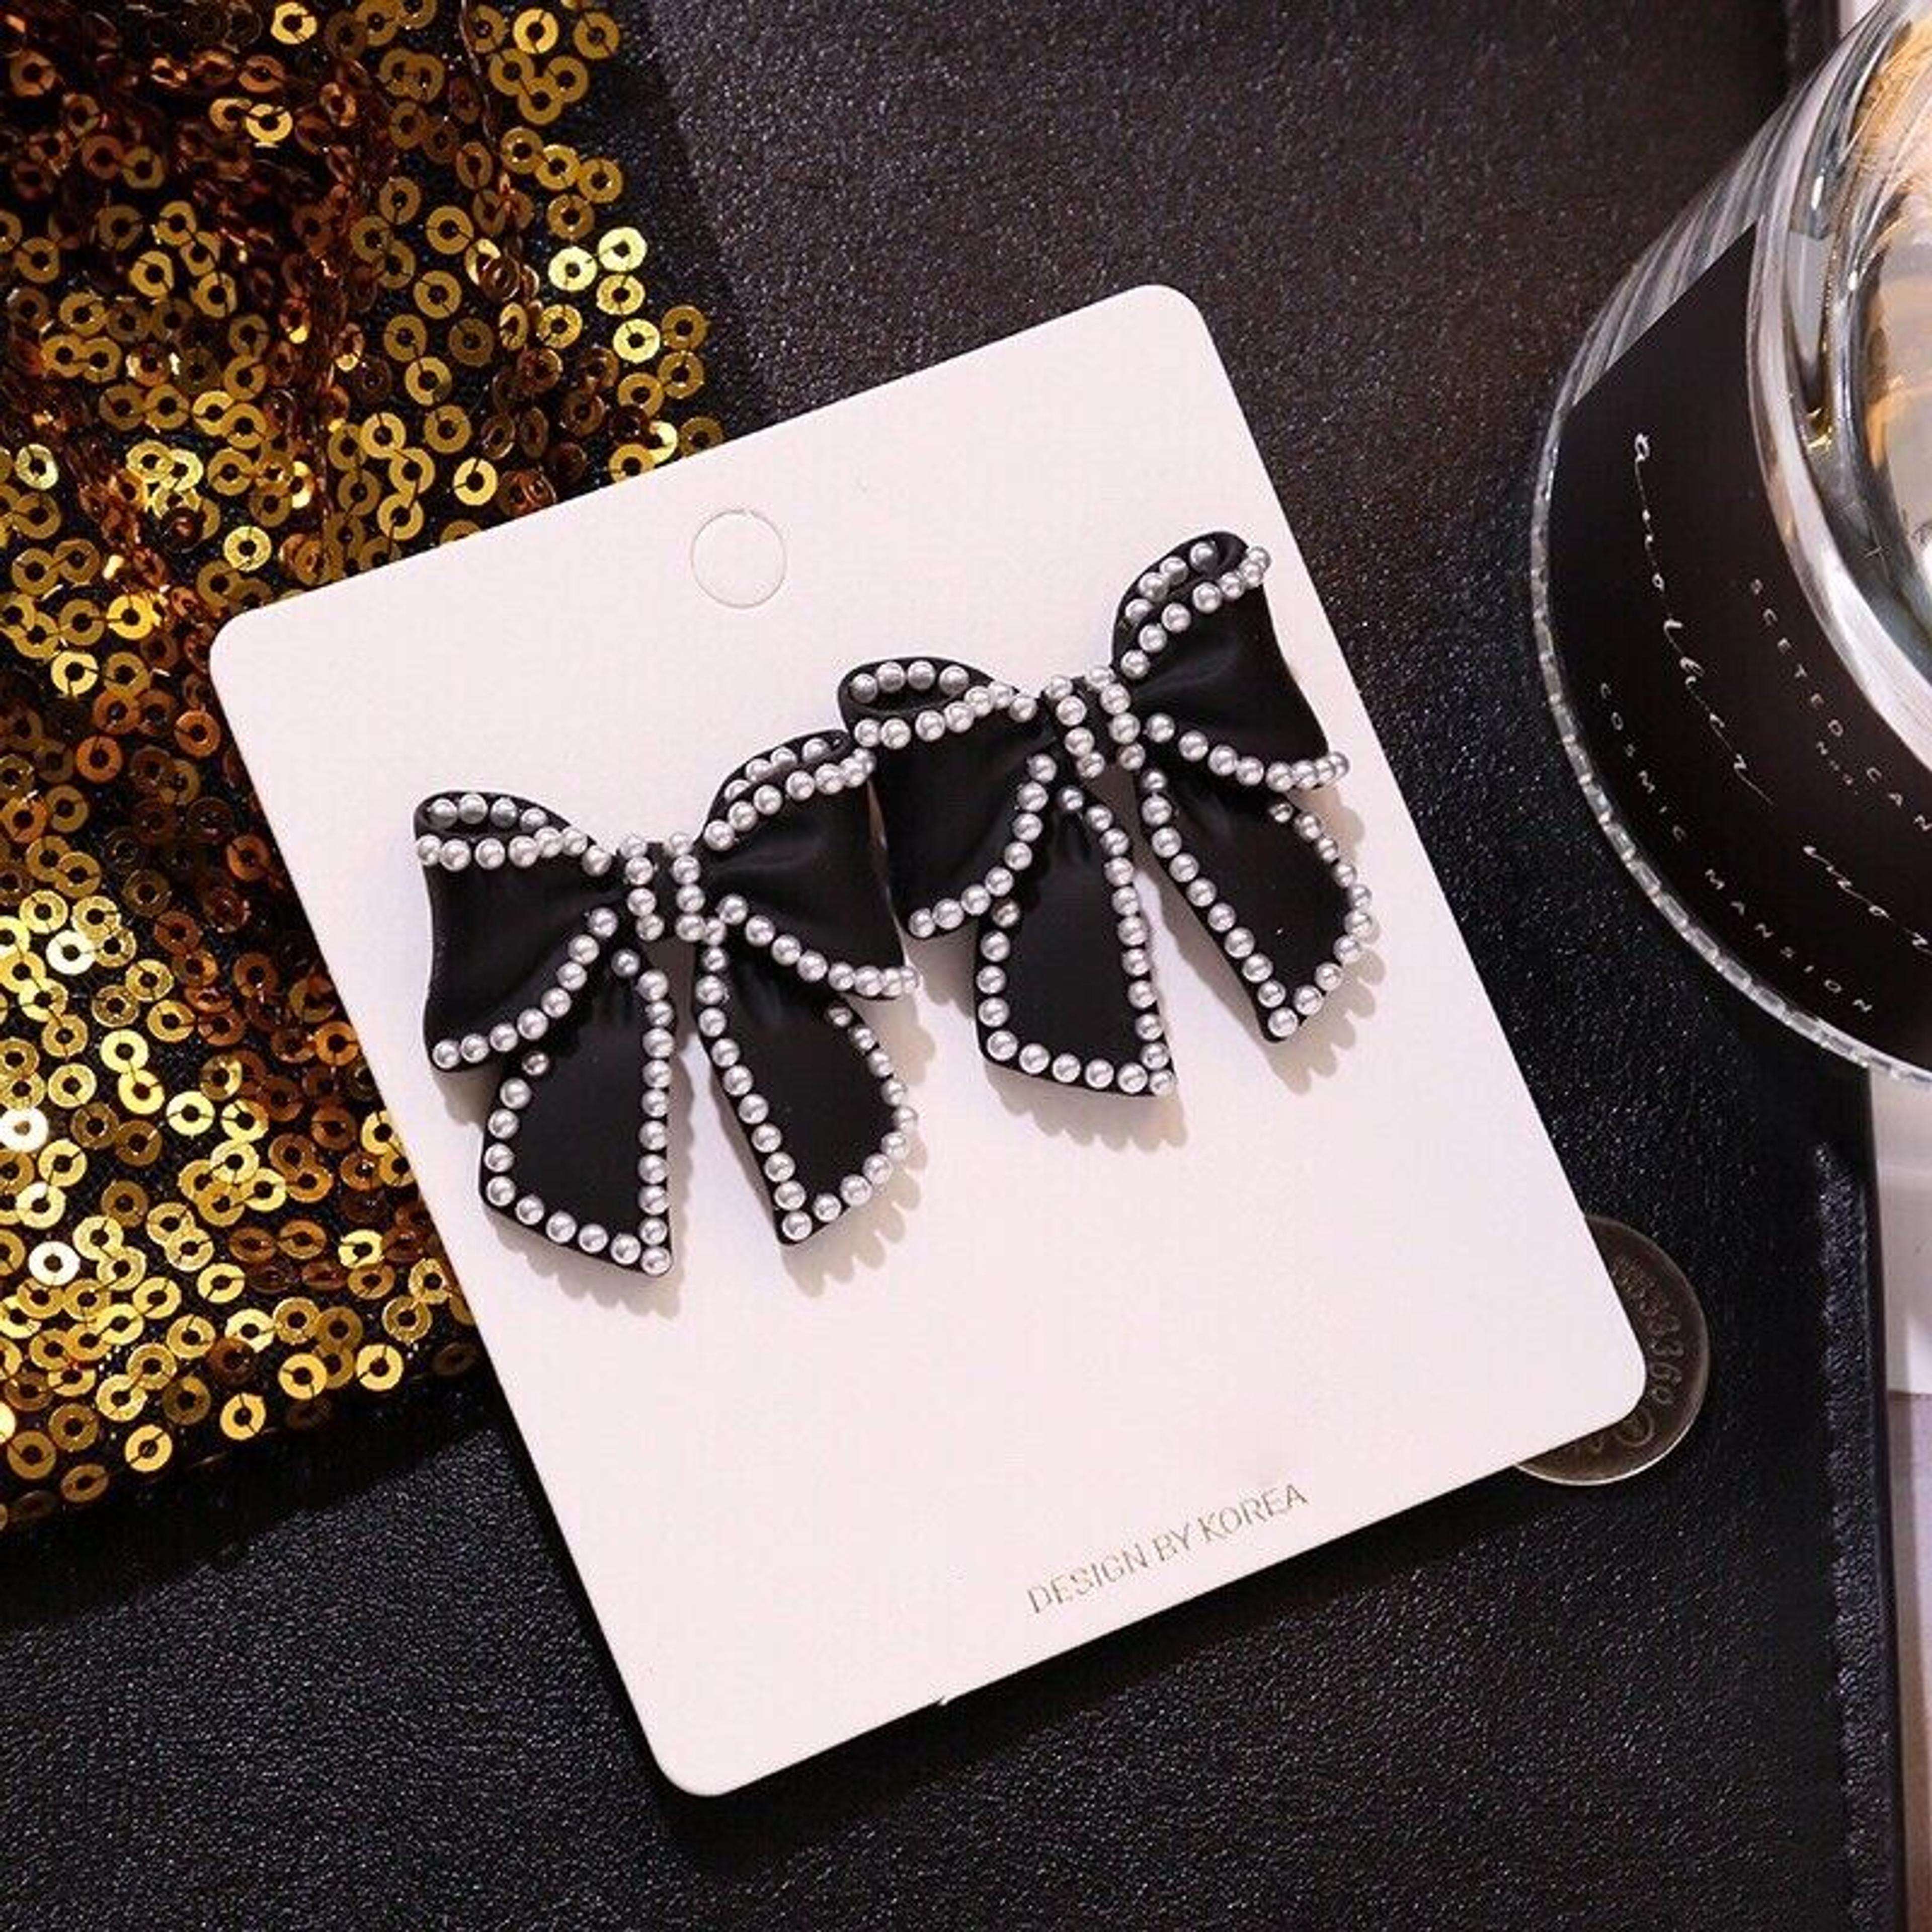 Black Bow Stud Earrings for Women,Pearl Earrings,Bow Earrings,Cute and Chic | eBay